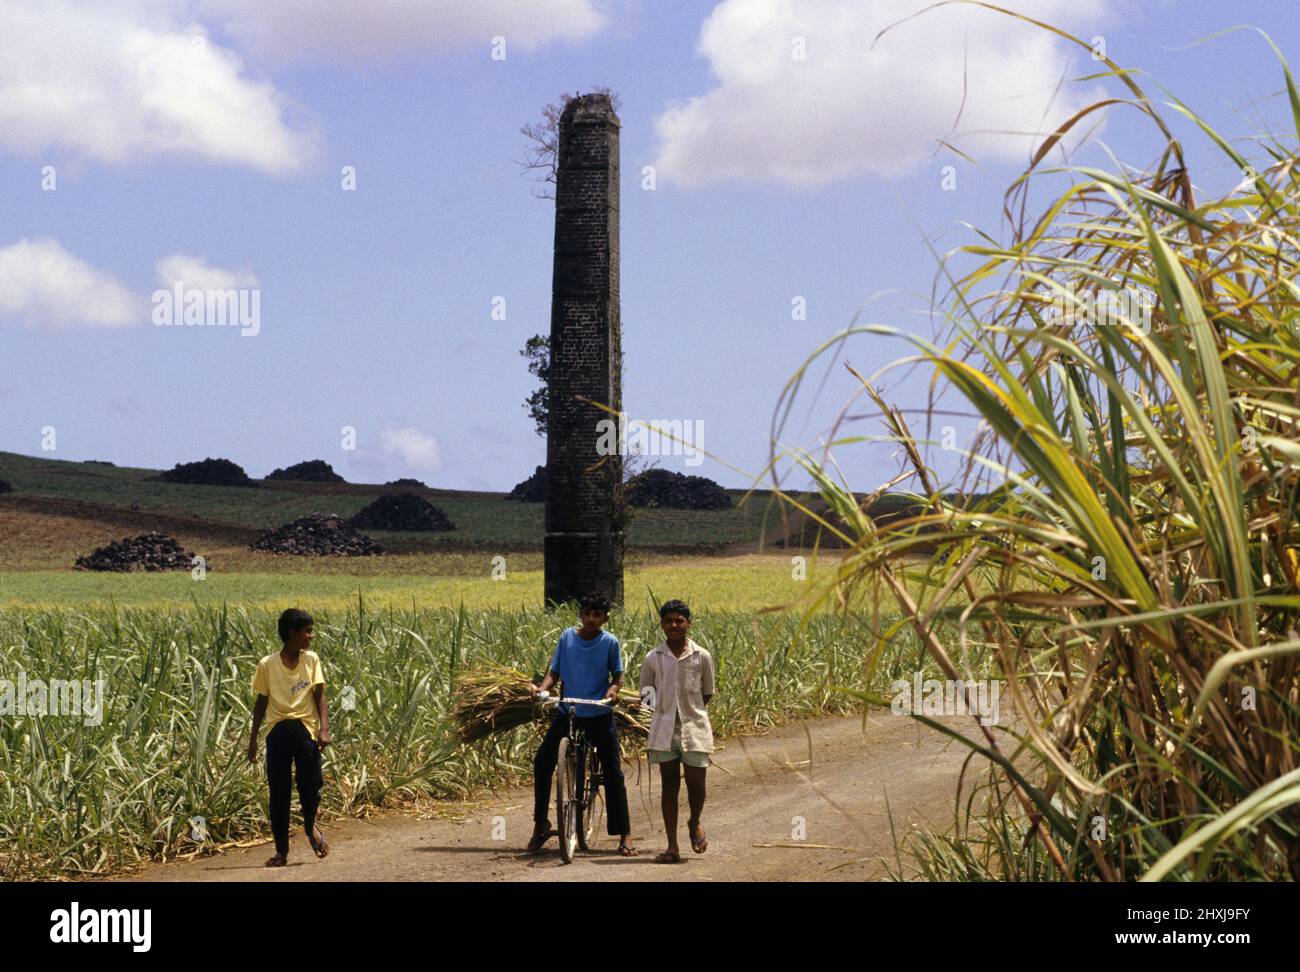 sugar cane agriculture mauritius island Stock Photo